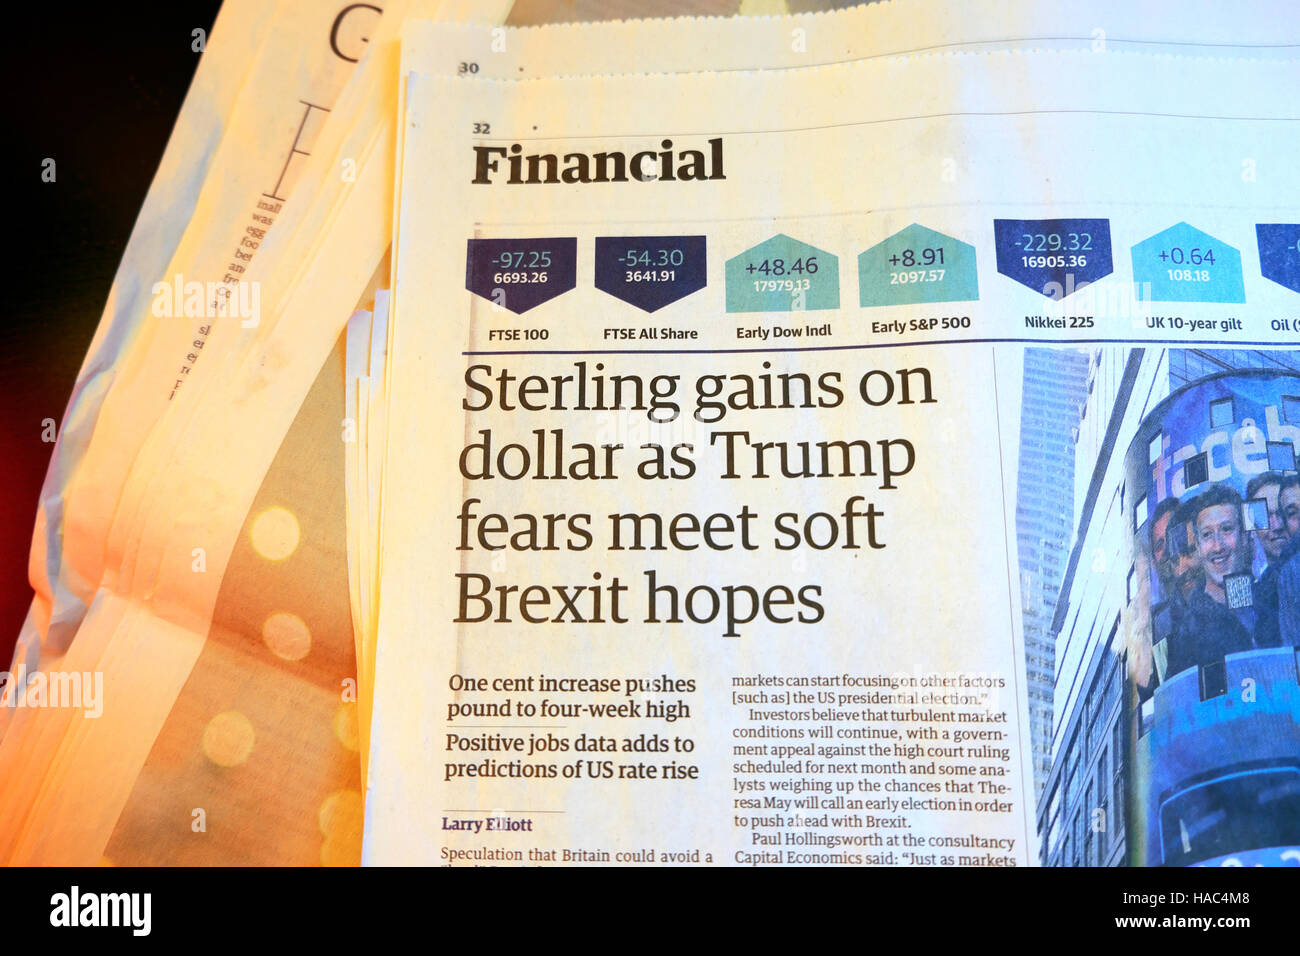 Die terling Gewinne auf Dollar als Trumpf Ängste weichen Brexit hofft, "Finanzielle Artikel der britischen Zeitung The Guardian papers 5 Nov 2016 treffen Stockfoto